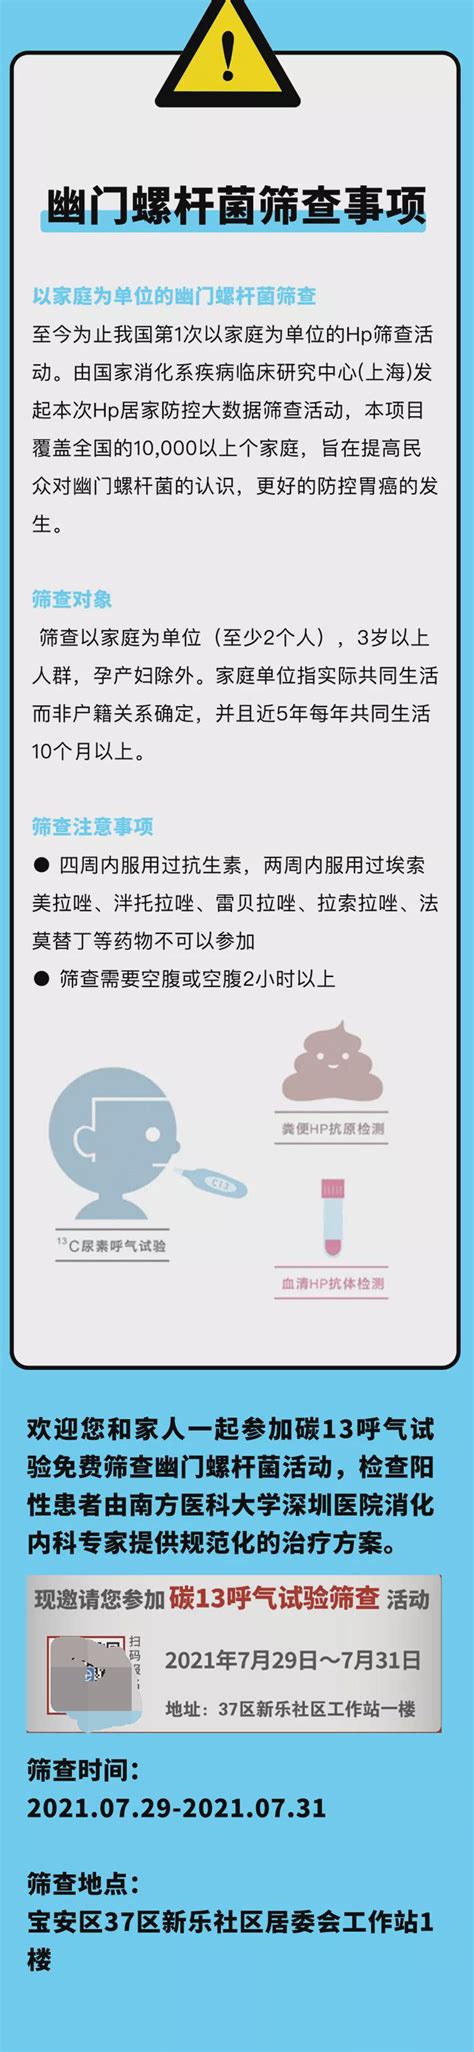 2021中国幽门螺杆菌居家免费筛查项目走进社区 - 微医（挂号网）